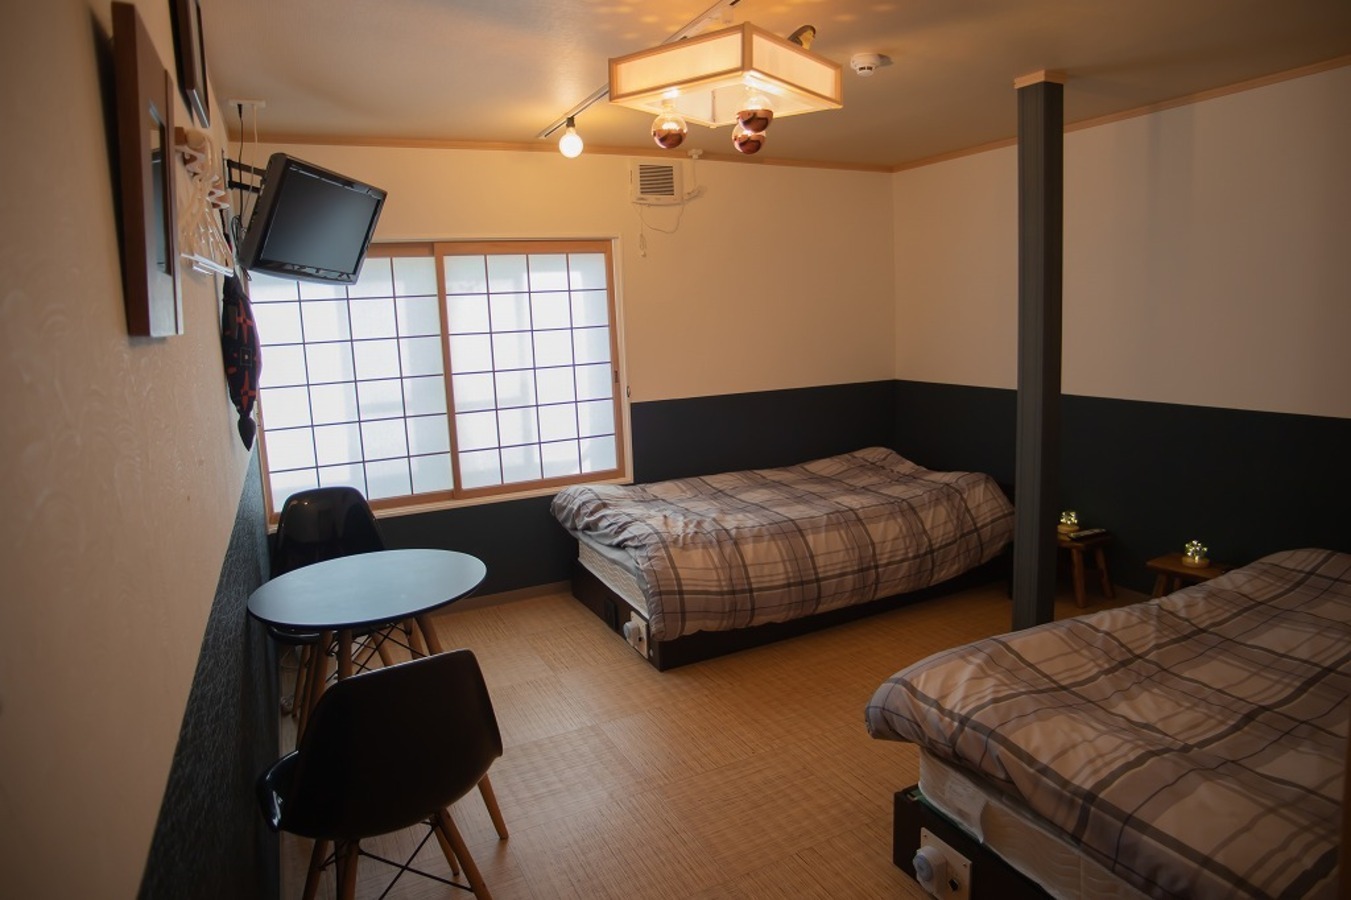 Room2は落ち着いた和モダンのお部屋です。  Room 2:Modern Japanese style room with two single beds.